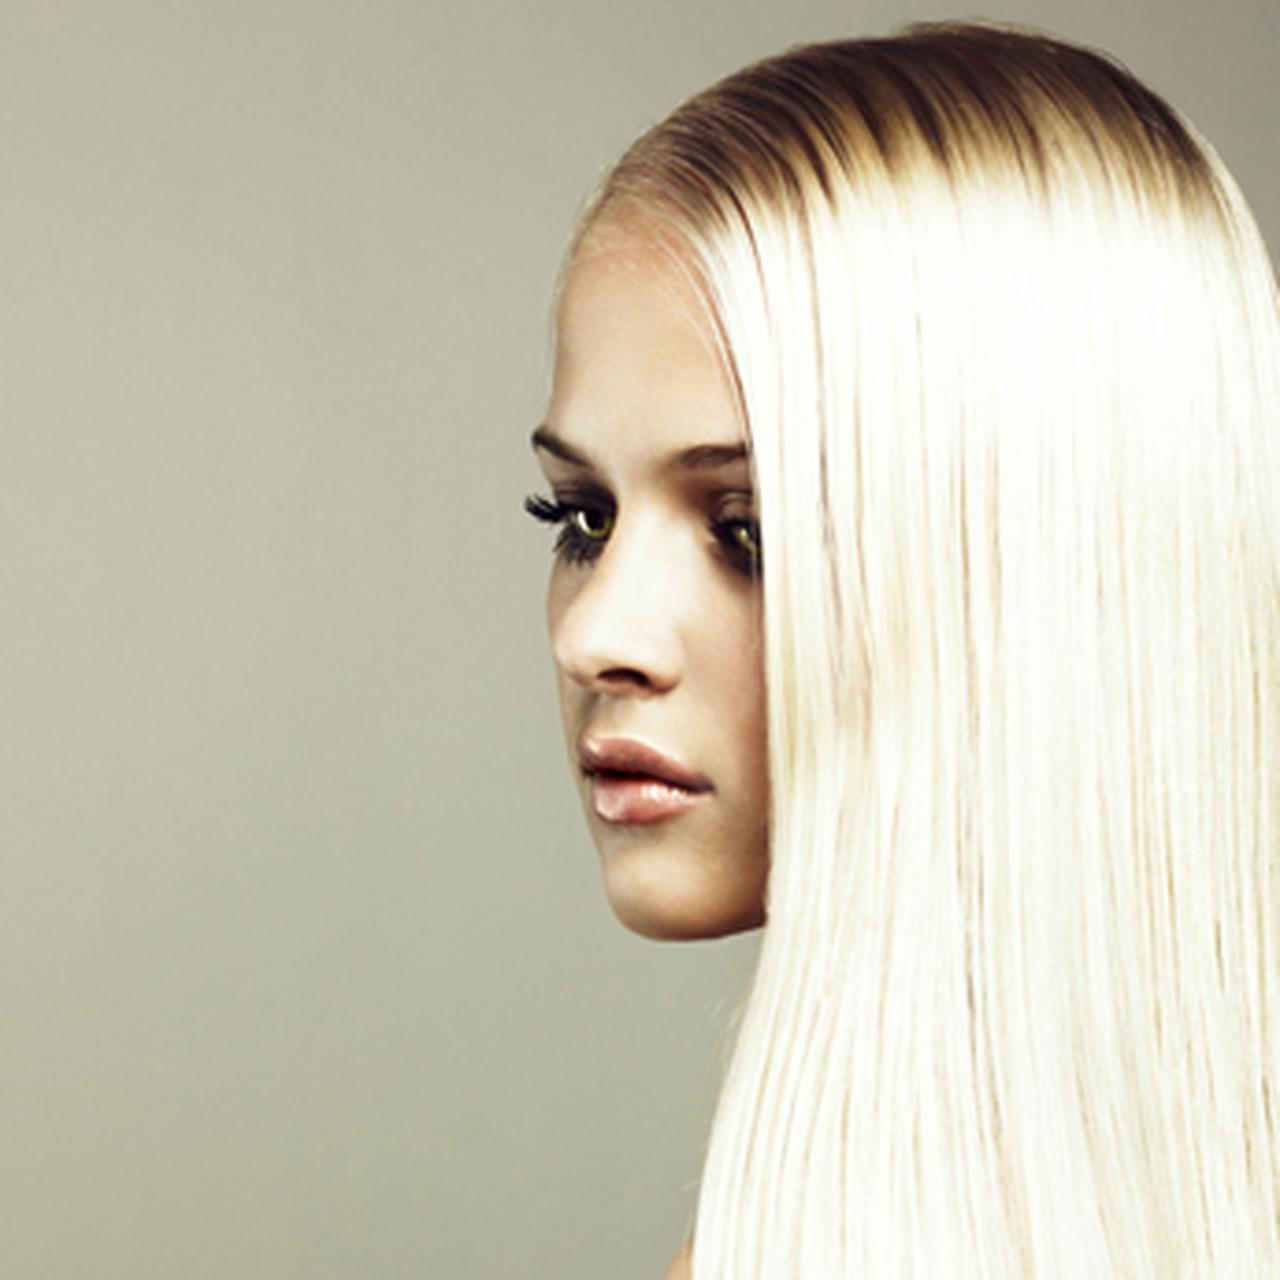 Как стать блондинкой: советы по окрашиванию от экспертов - Страсти